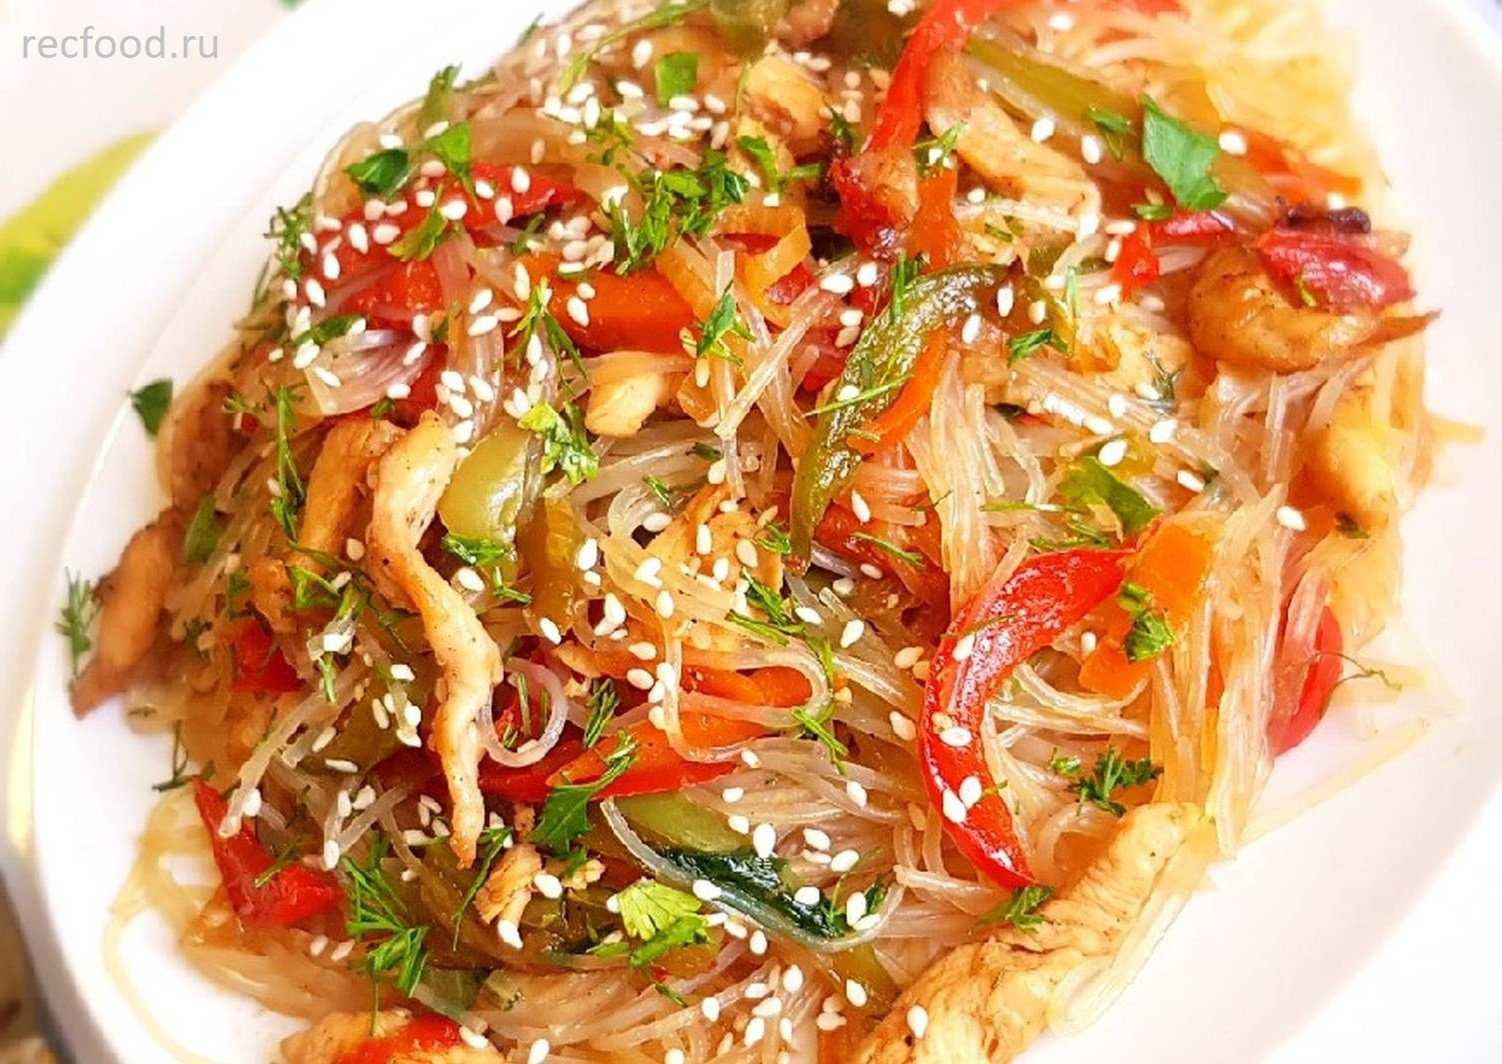 Вкусный салат из фунчозы с курицей и овощами – пошаговый рецепт с фото